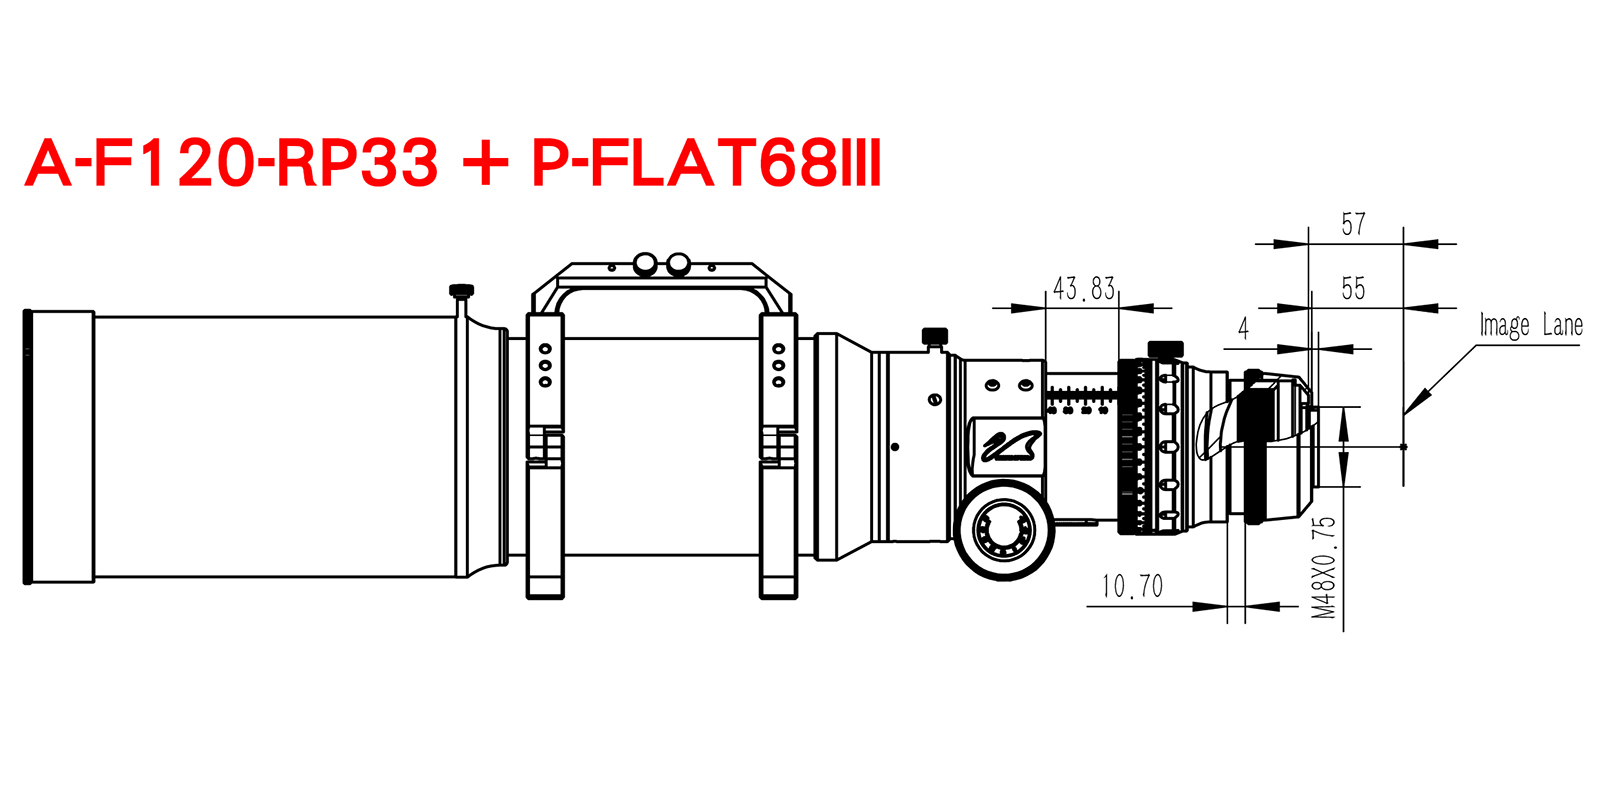 a-f120-rp33-p-flat68iii.jpg